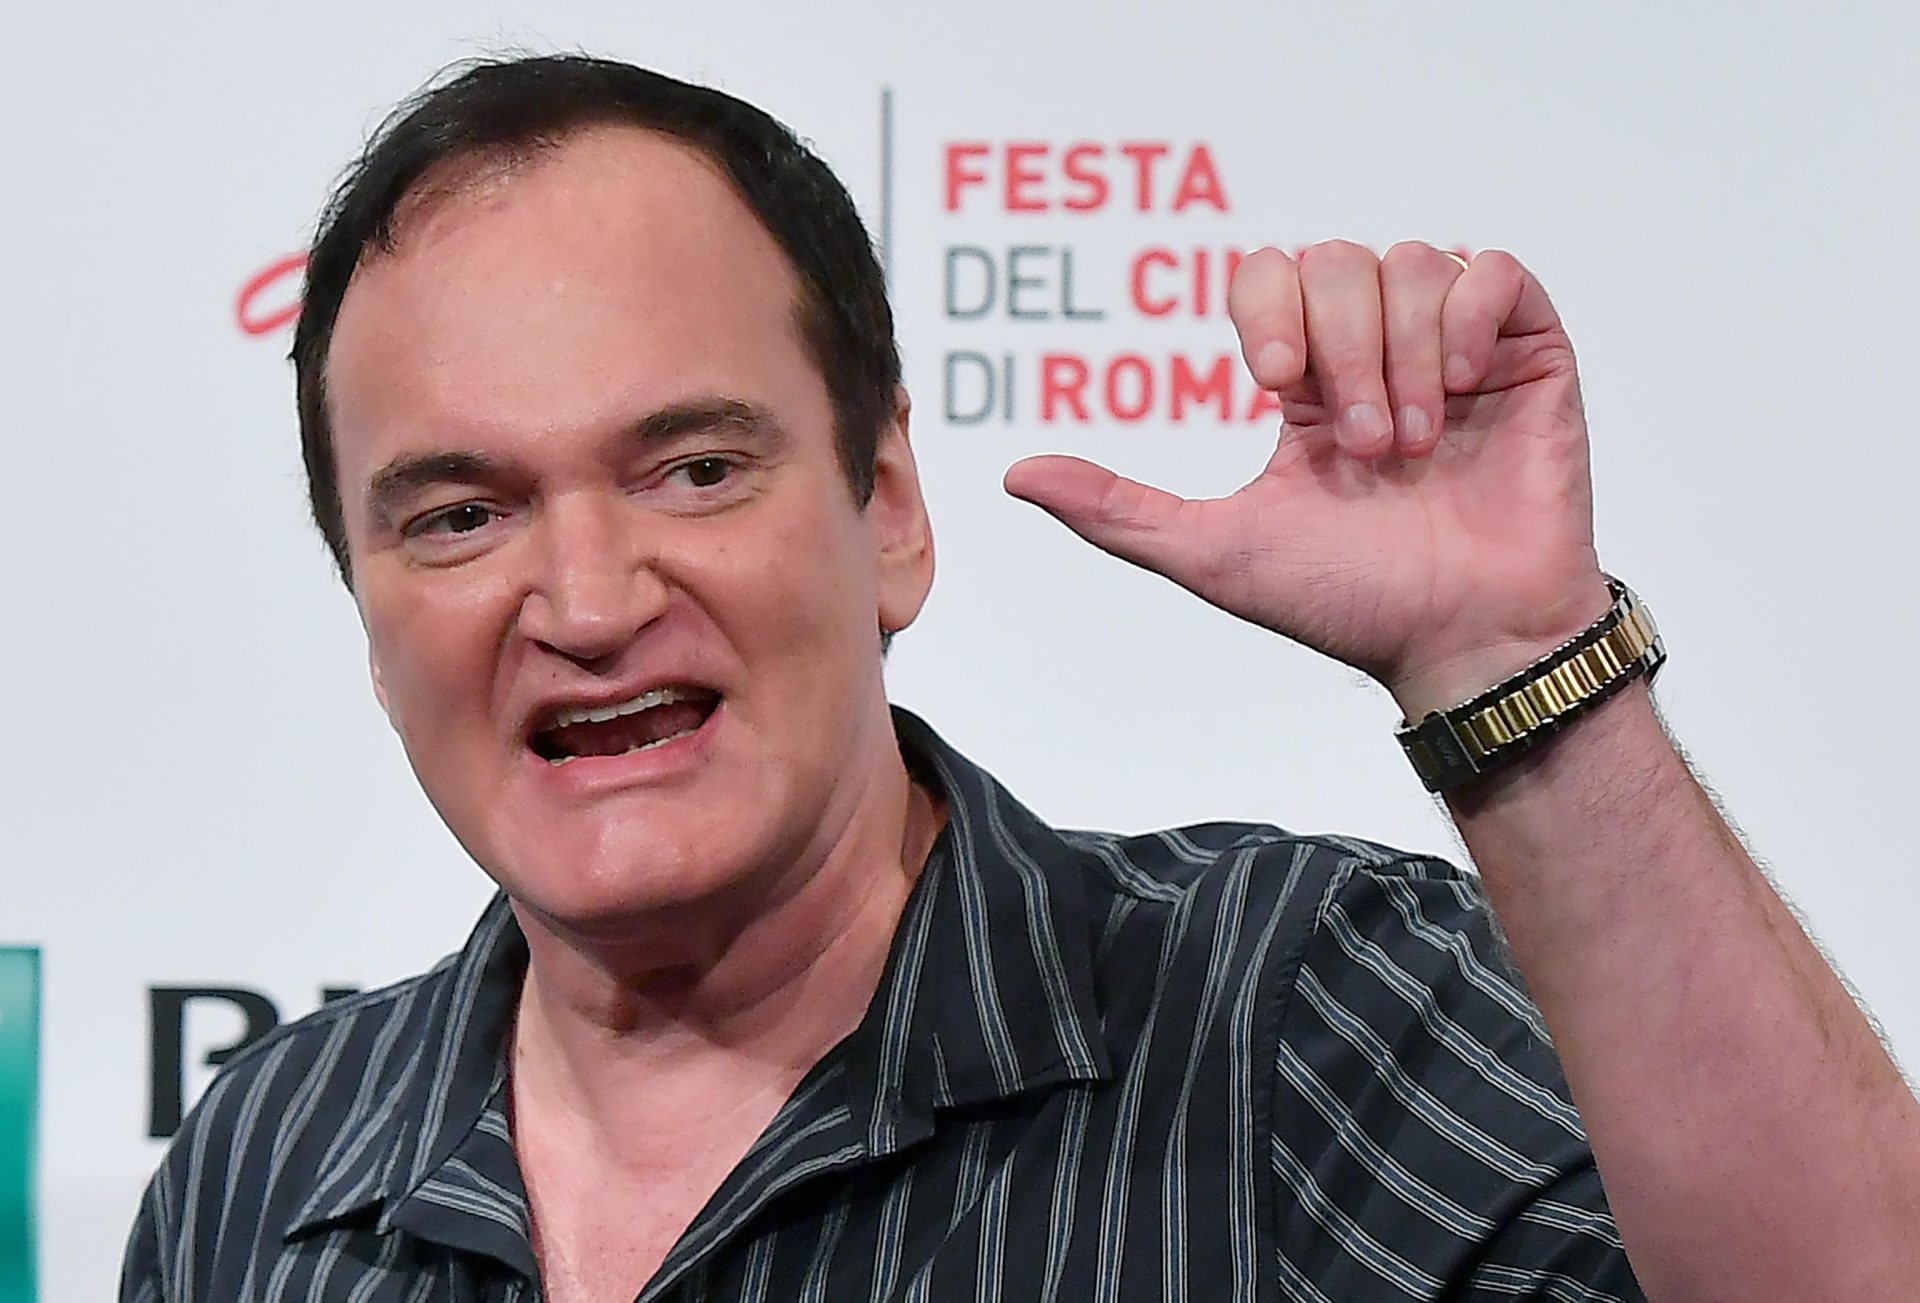 Nakon režije, glume i pisanja knjiga, Tarantino ima novu zanimaciju koja ide odlično uz njega